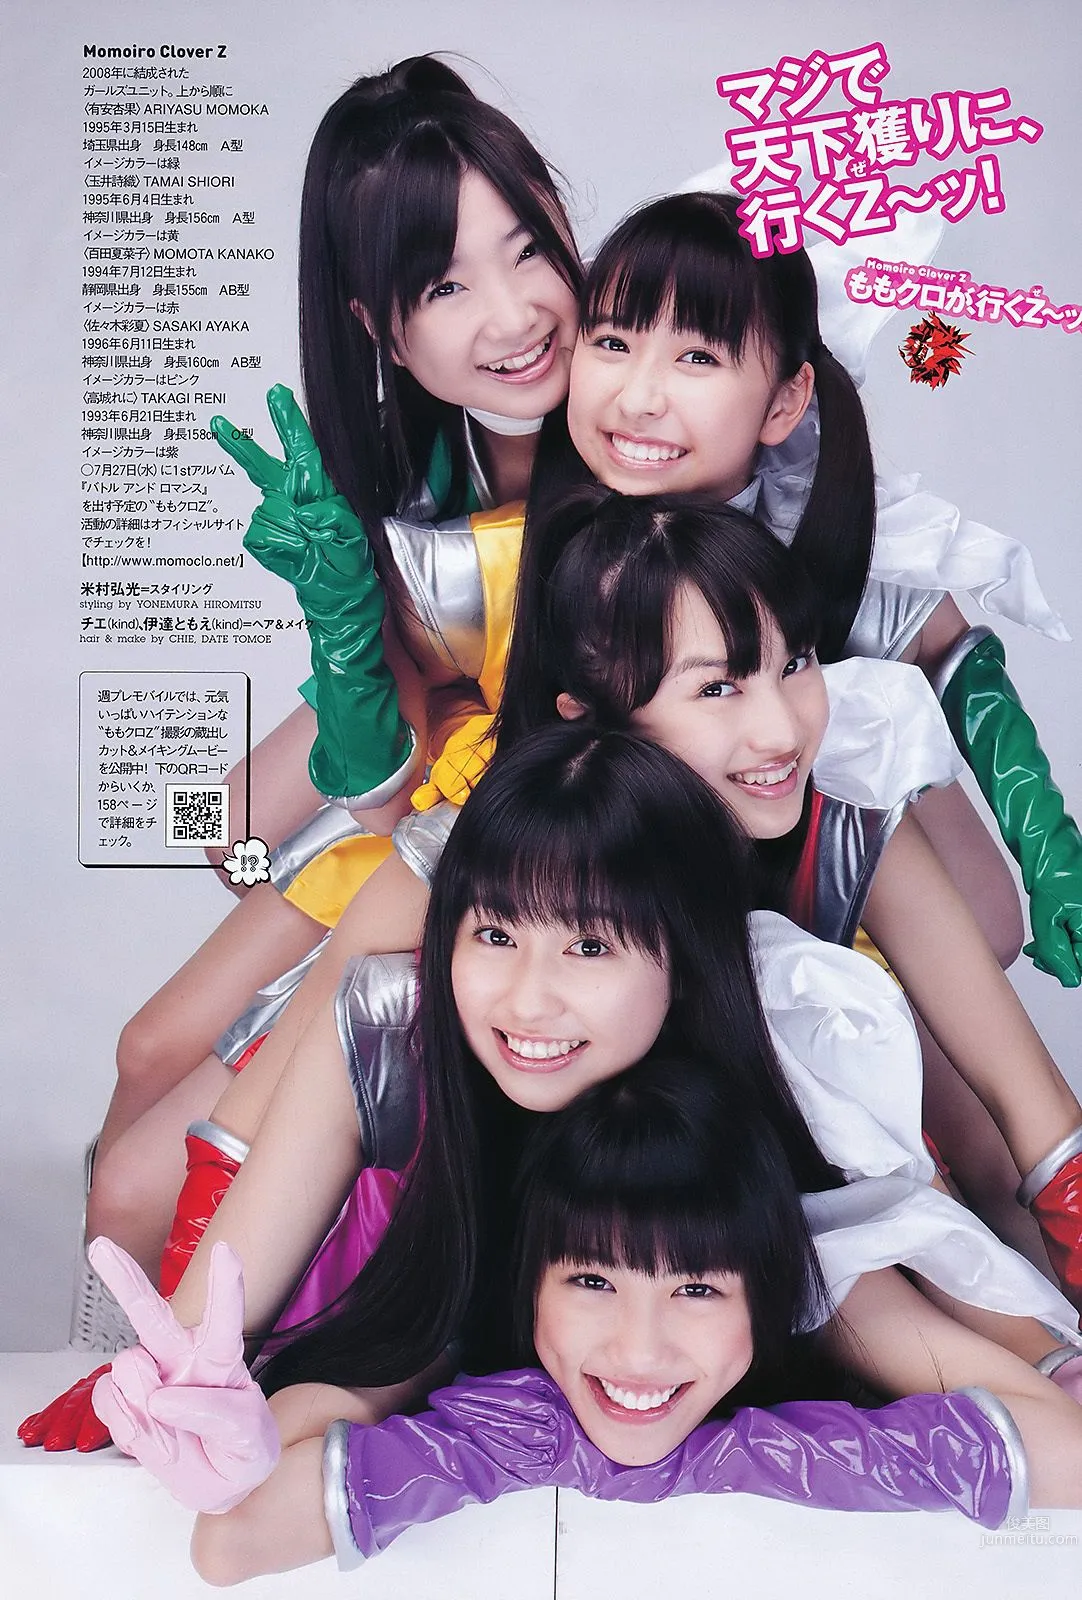 石原さとみ アイドリング!!! SUPER☆GiRLS ももいろクローバーＺ 中村一 [Weekly Playboy] 2011年No.28 写真杂志14